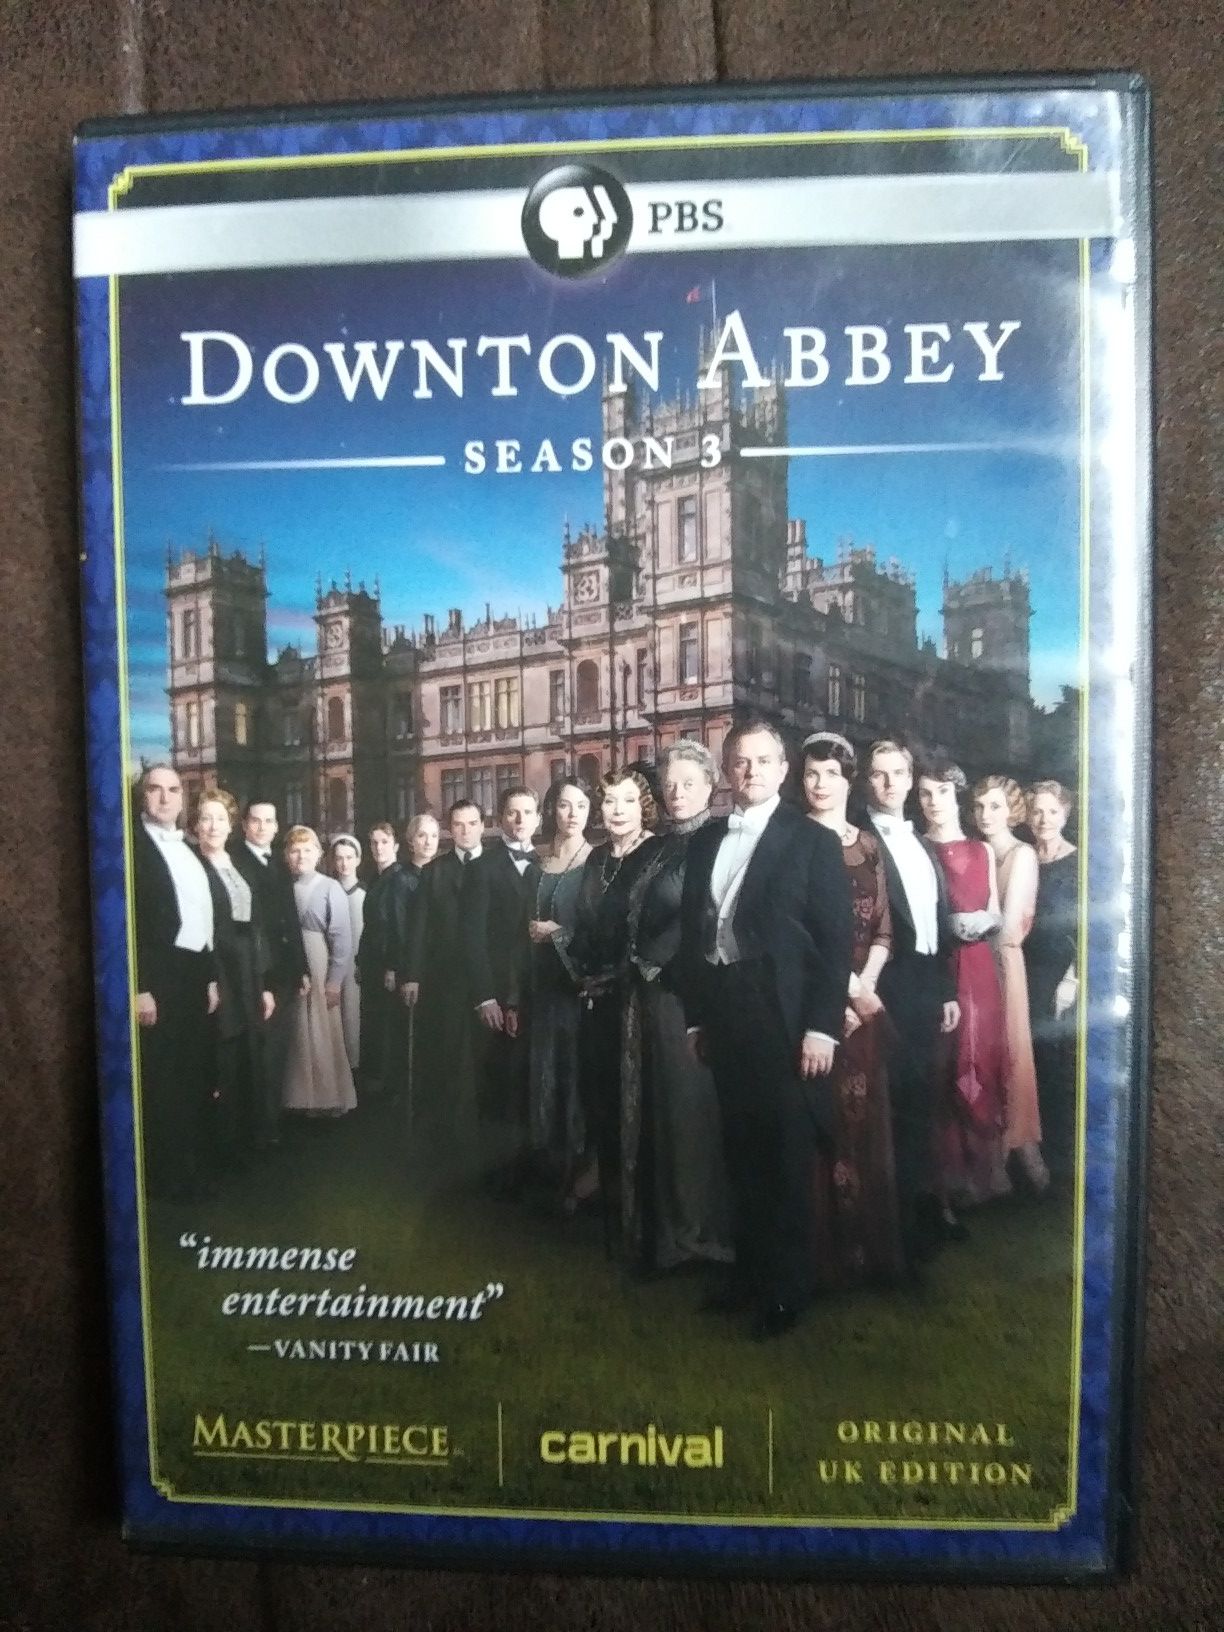 Downton Abbey DVD set Season 3 ($2)